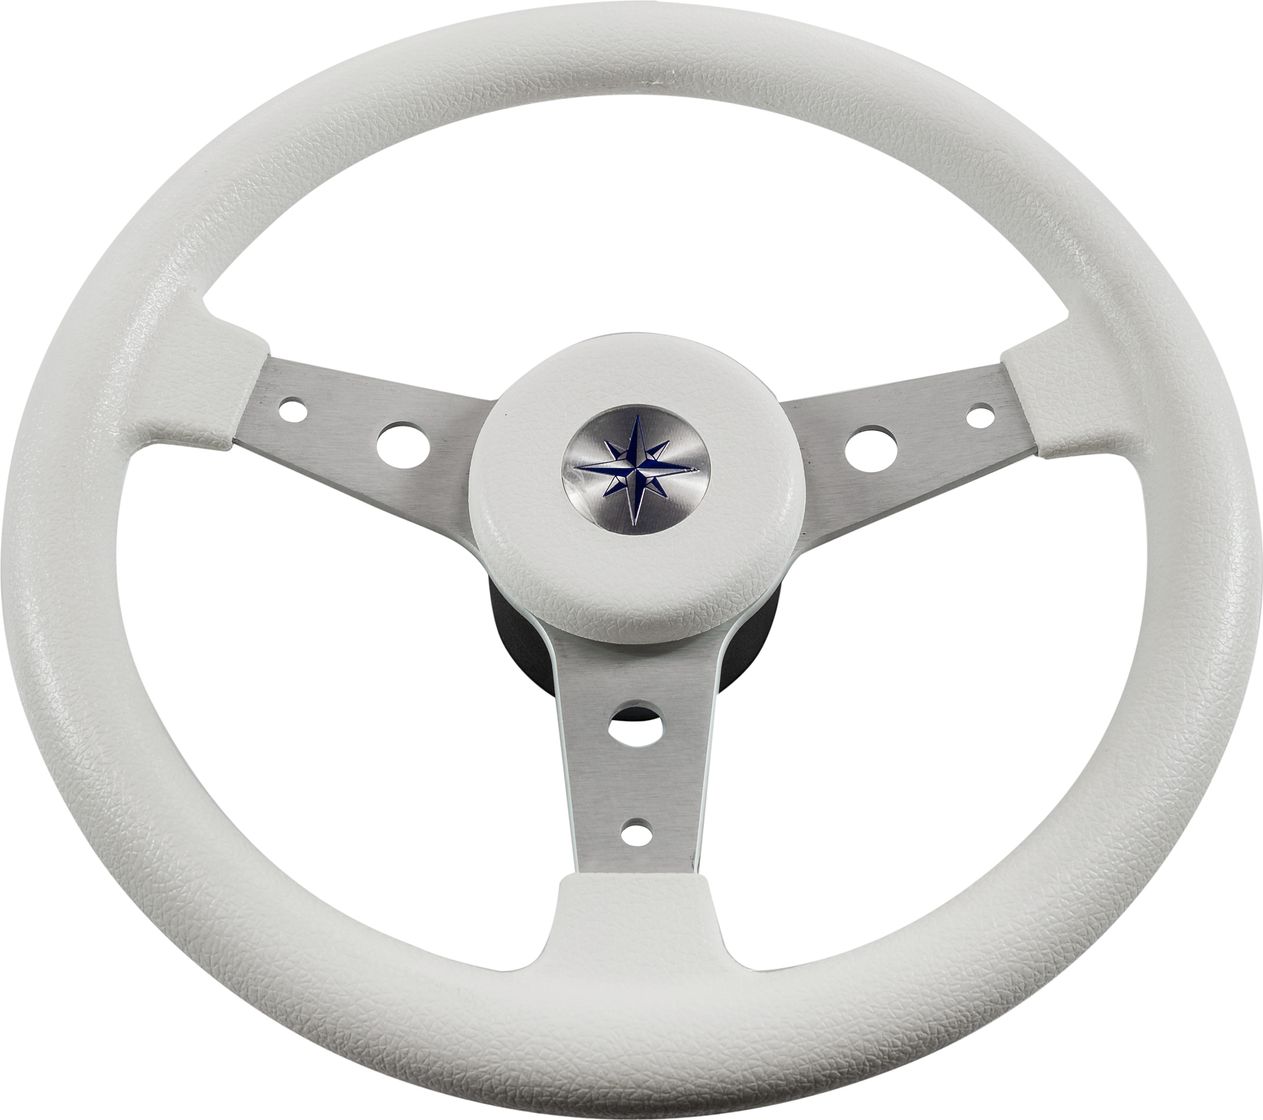 Рулевое колесо DELFINO обод белый,спицы серебряные д. 340 мм VN70401-08 рулевое колесо evolution белый обод с карбоновыми вставками more 10016468